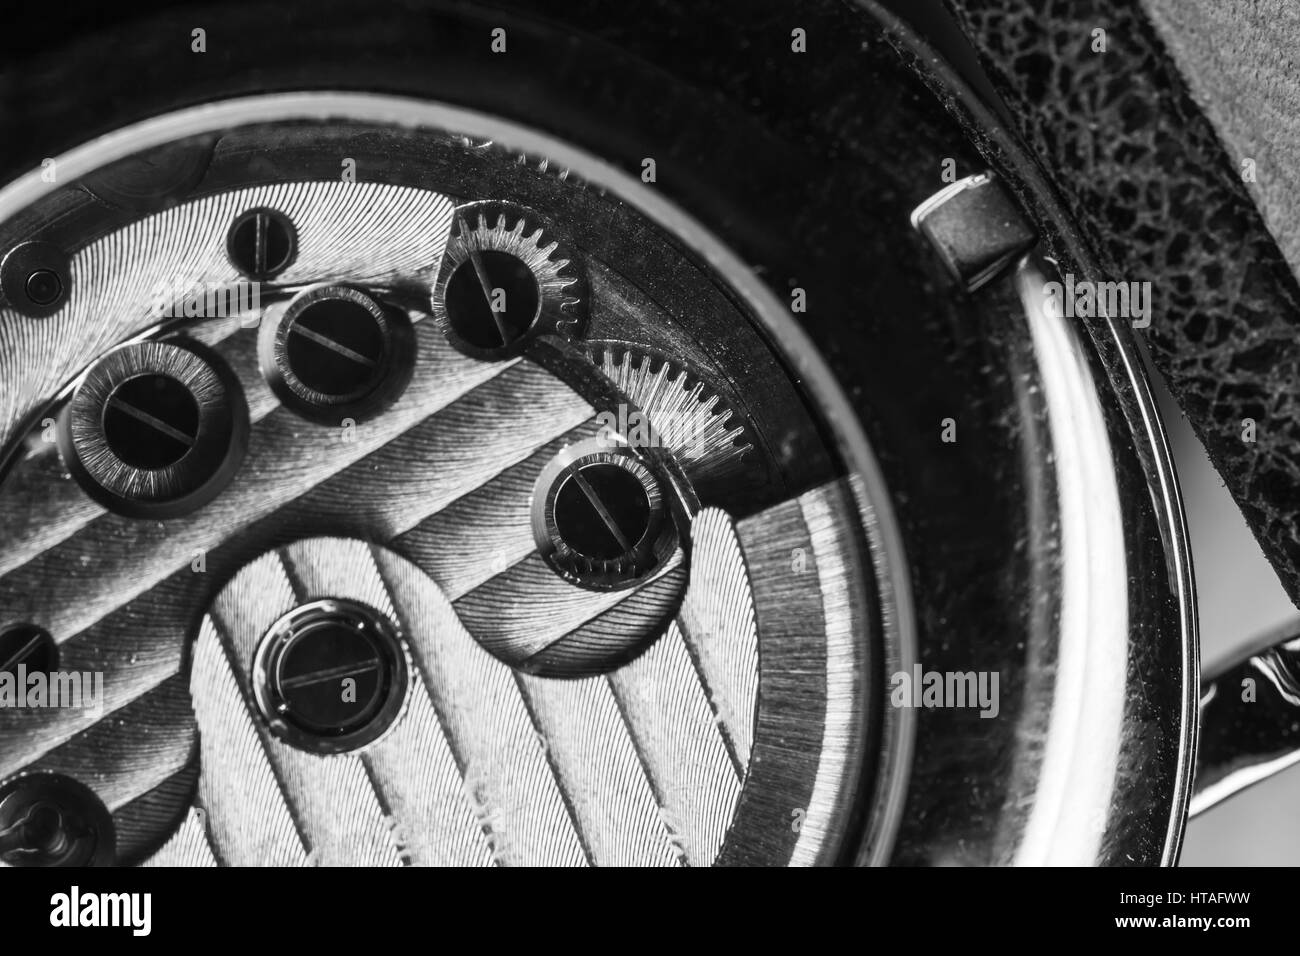 Mechanische Herren-Armbanduhr mit automatischem gewundenen, Nahaufnahme Fragment der offenen Rückseite mit Automatikaufzug Mechanismus Details, schwarz und weiß Stockfoto